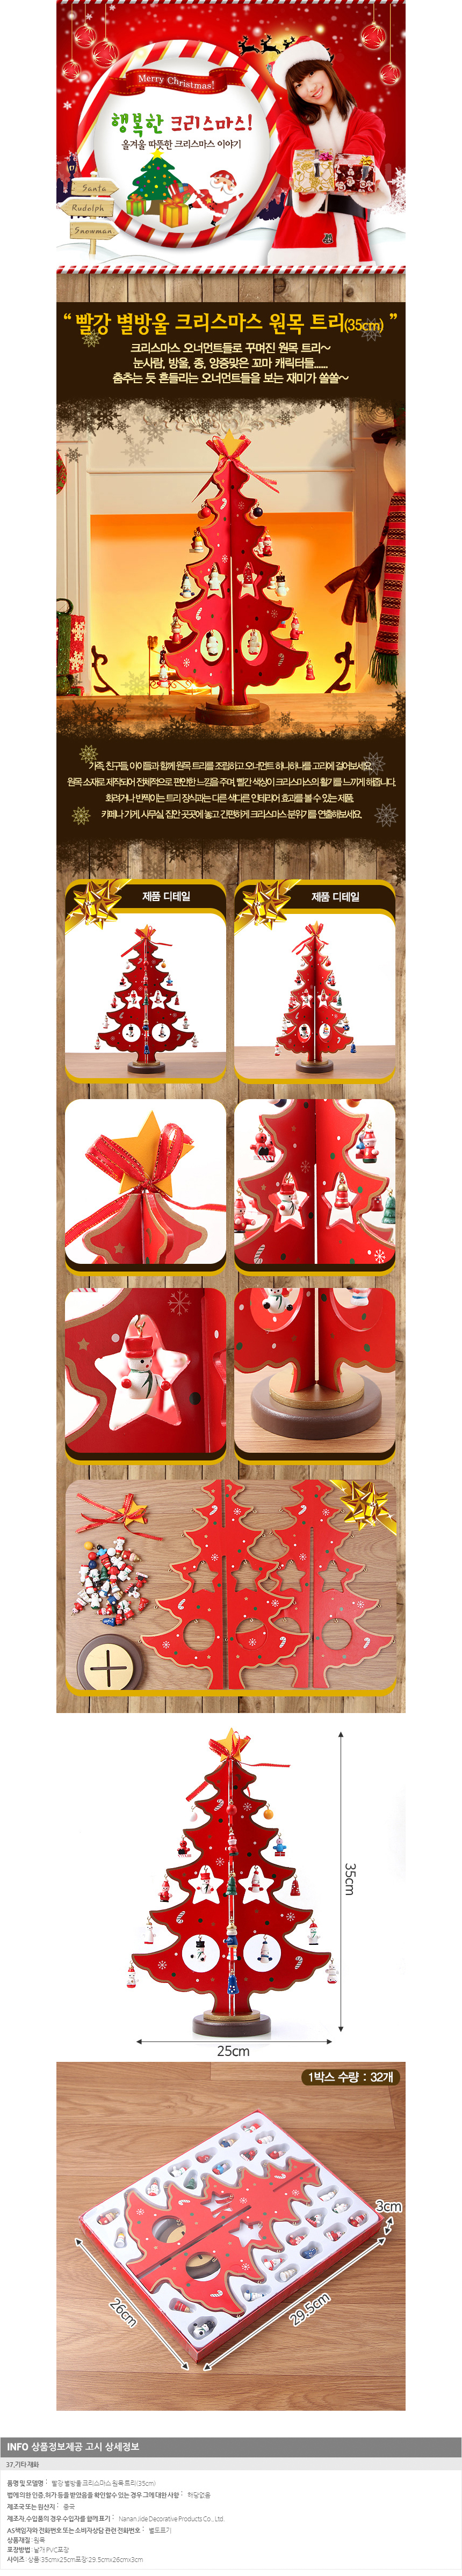 [크리스마스트리]빨강 별방울 크리스마스 원목 트리(35cm)